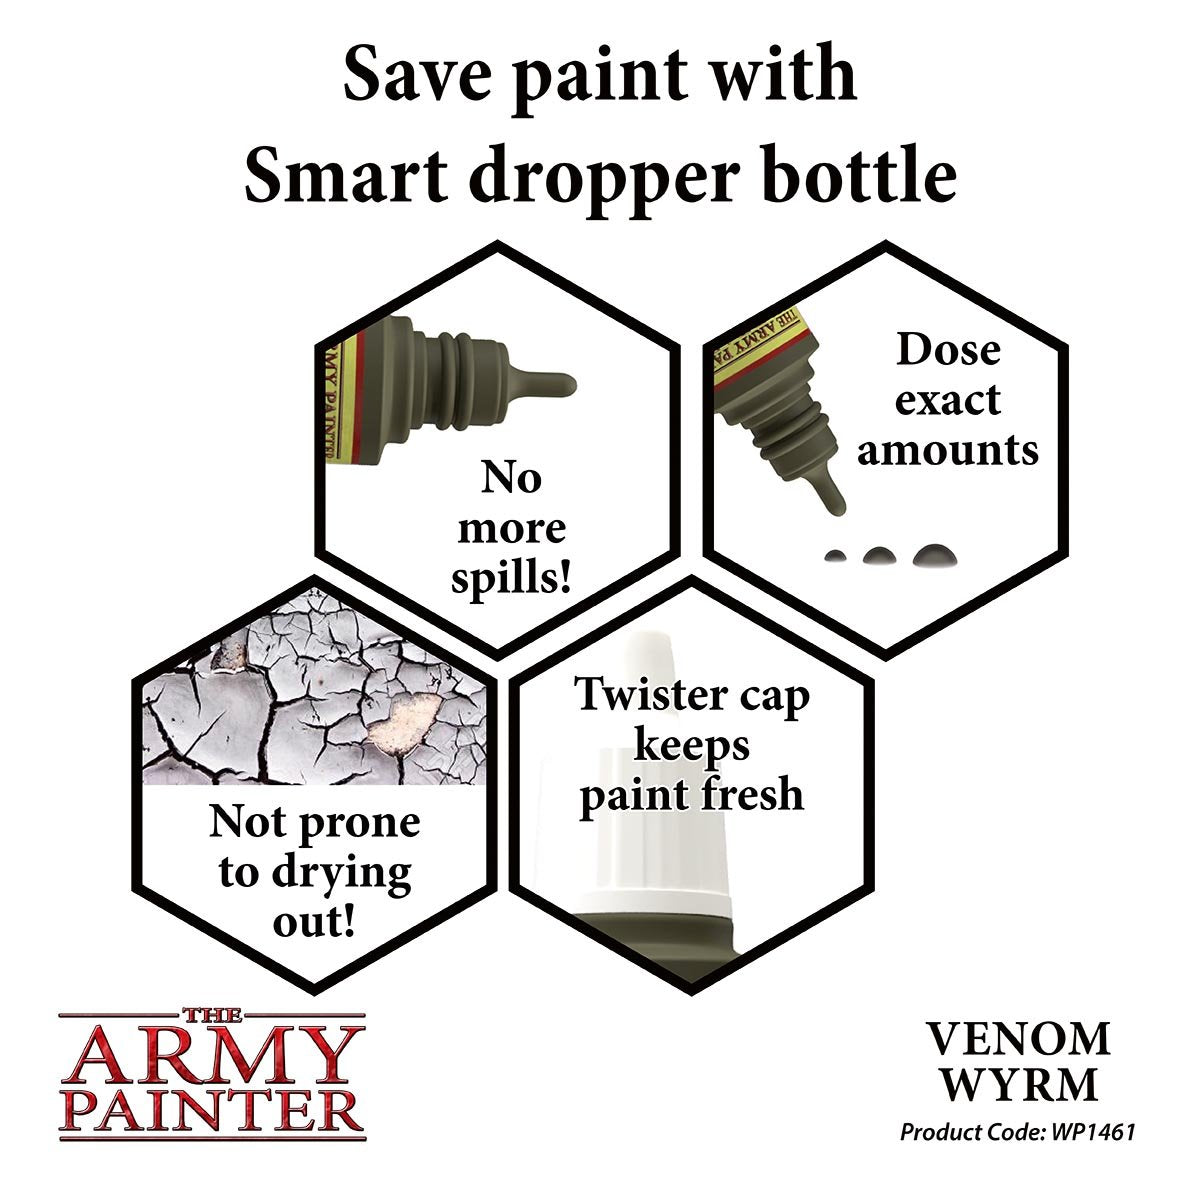 The Army Painter Warpaints WP1461 Venom Wyrm Acrylic Paint 18ml bottle